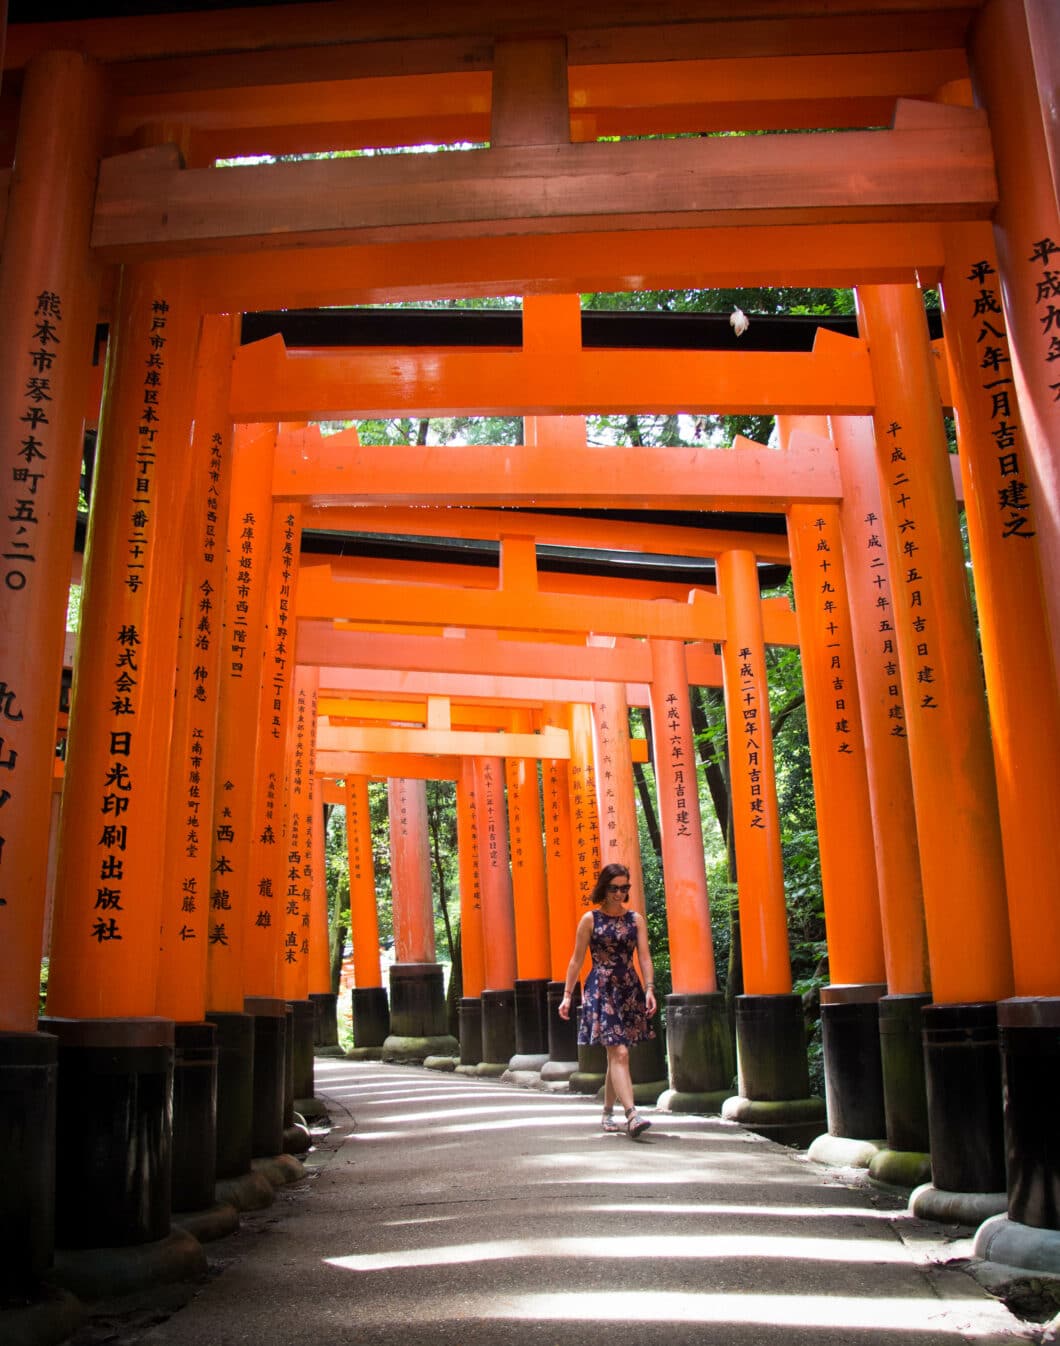 Exploring Fushimi Inari Shrine in Kyoto